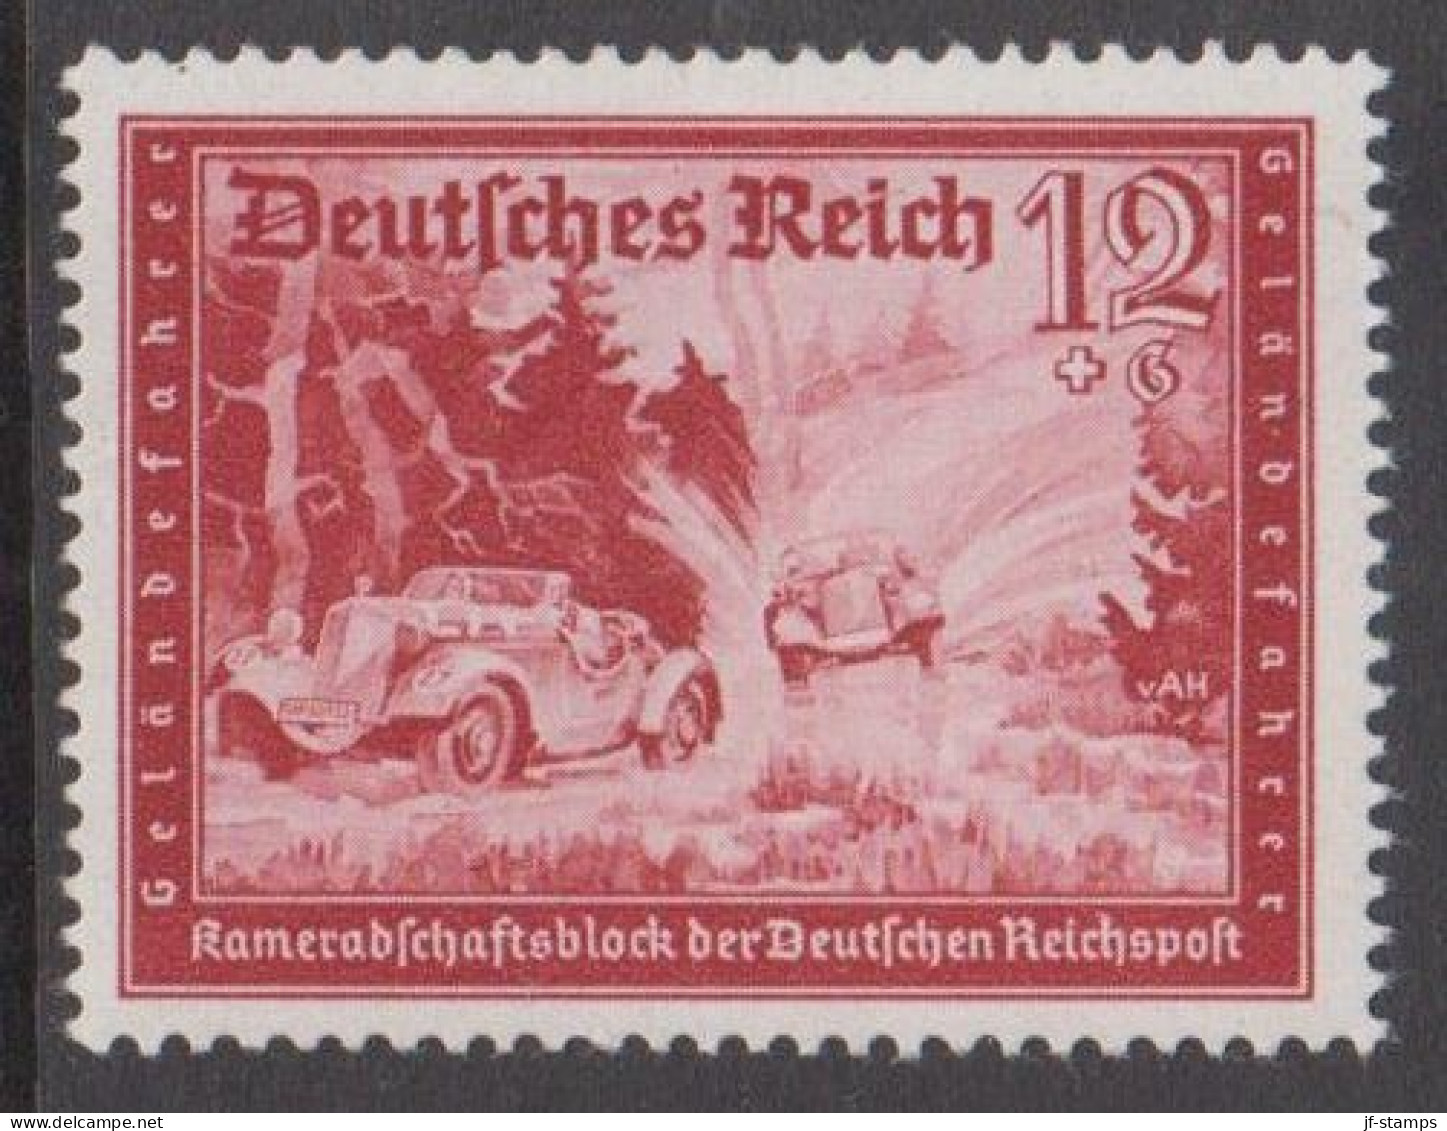 1939. DEUTSCHES REICH. Kameradschaftsblock Der Deutschen Reichspost 12+6 Pf Hinged. (Michel 708) - JF539169 - Neufs